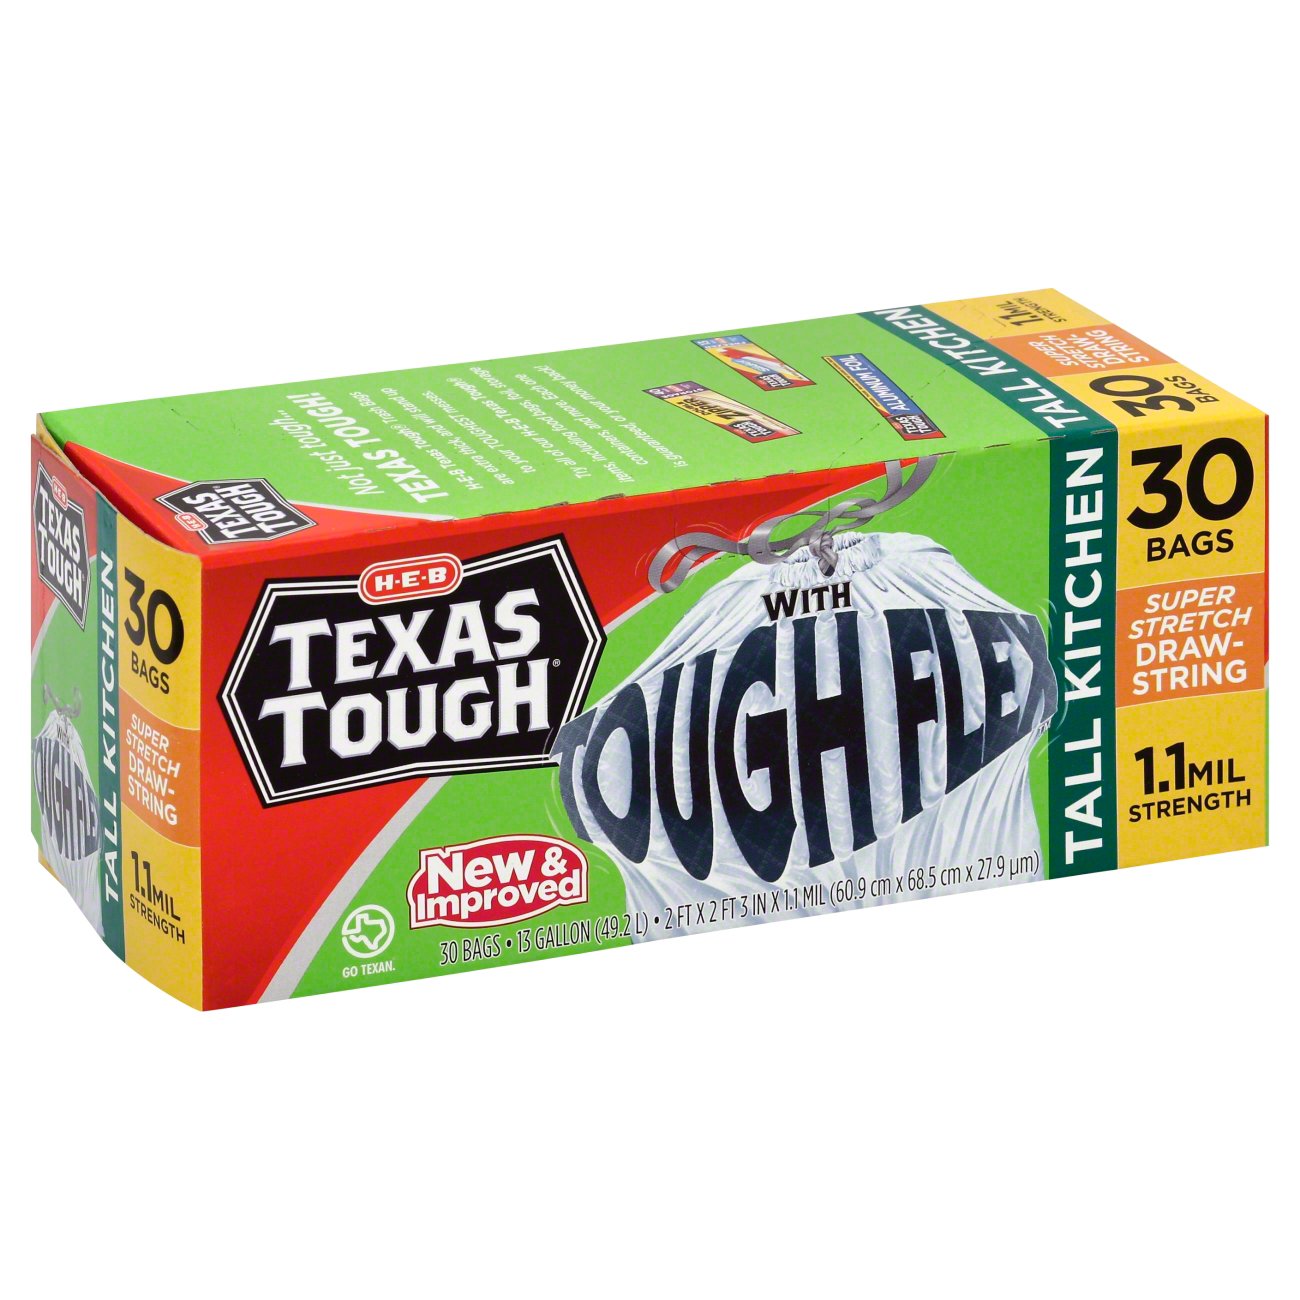 H-E-B Texas Tough Extra Large Trash Bags, 50 Gallon - Shop Trash Bags at  H-E-B